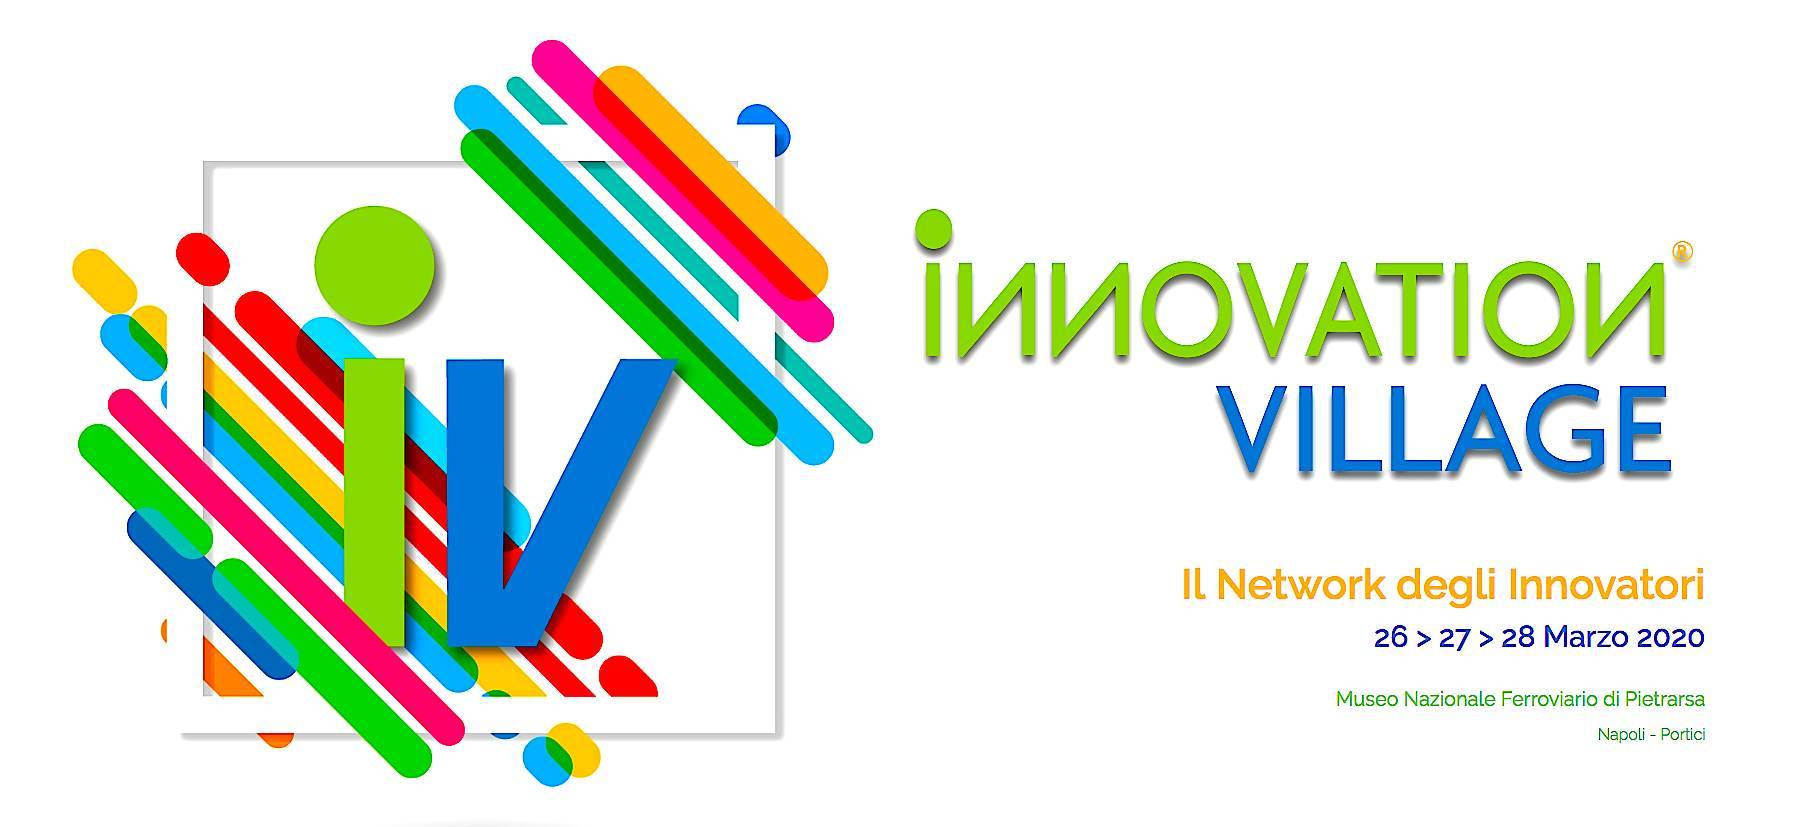 innovation_village-2020-grande.jpg